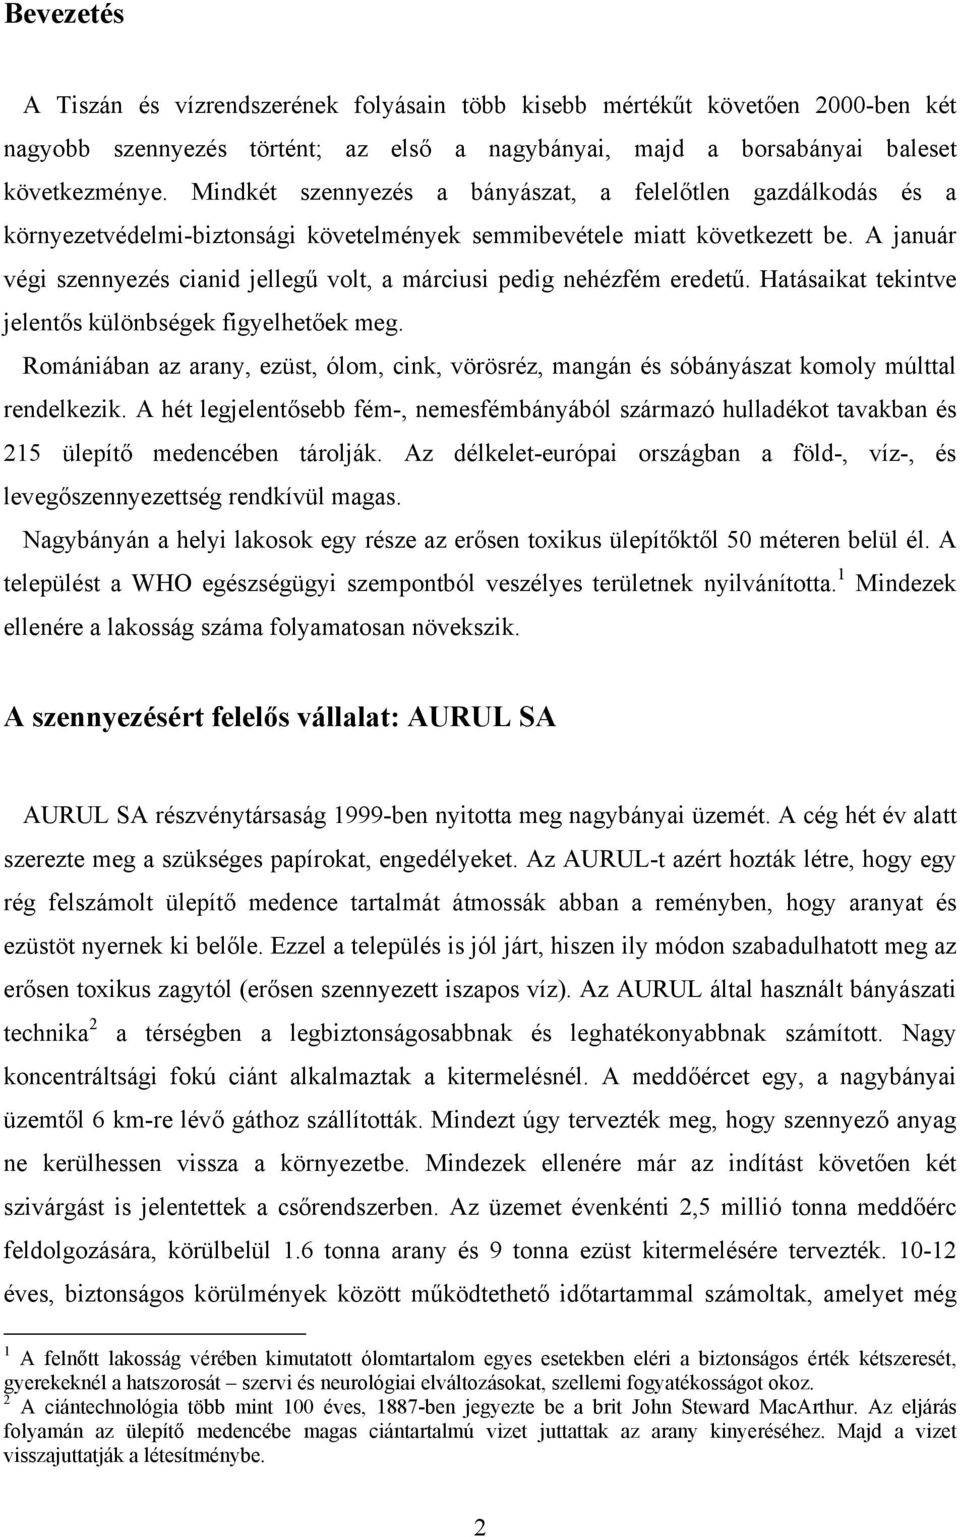 Tiszai ciánszennyezés. Márkus Marietta - PDF Free Download